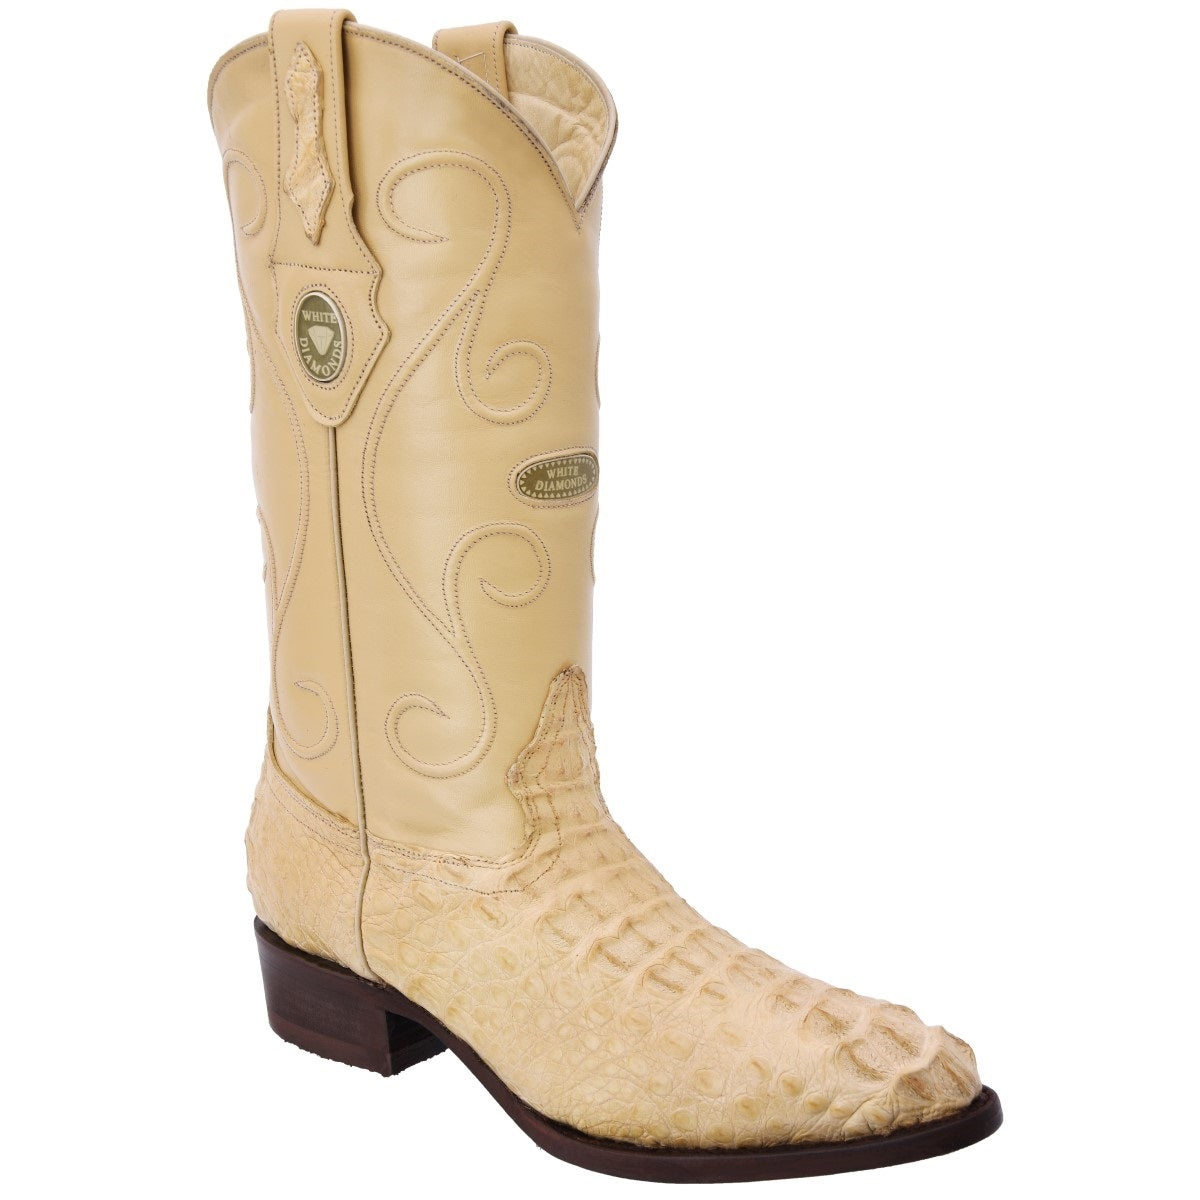 Botas Vaqueras TM-WD0263 - Western Boots